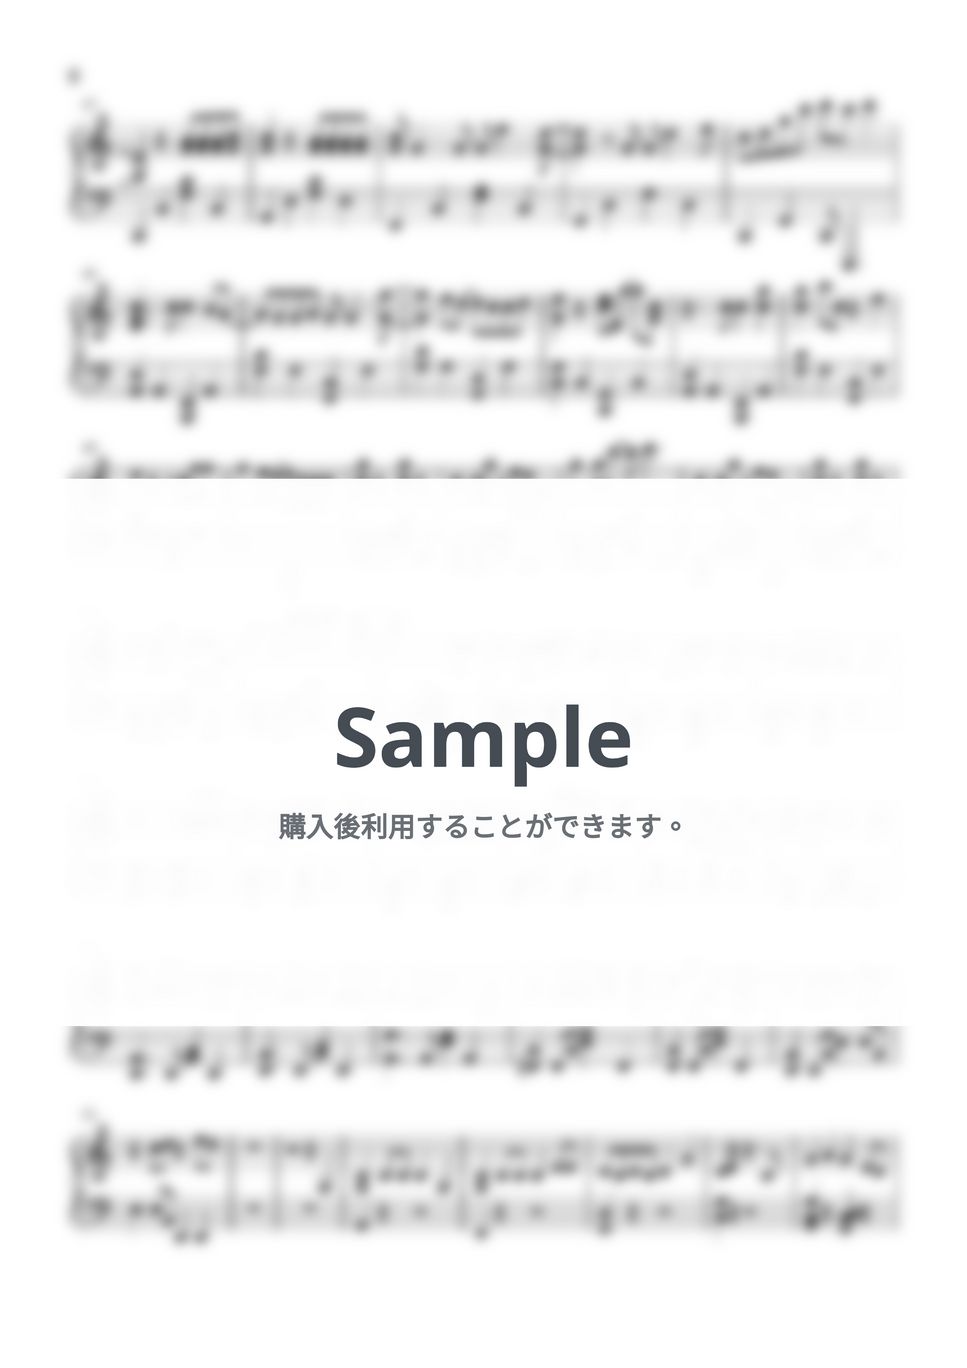 ロクデナシ - リインカーネーション (intermediate, piano) by Mopianic